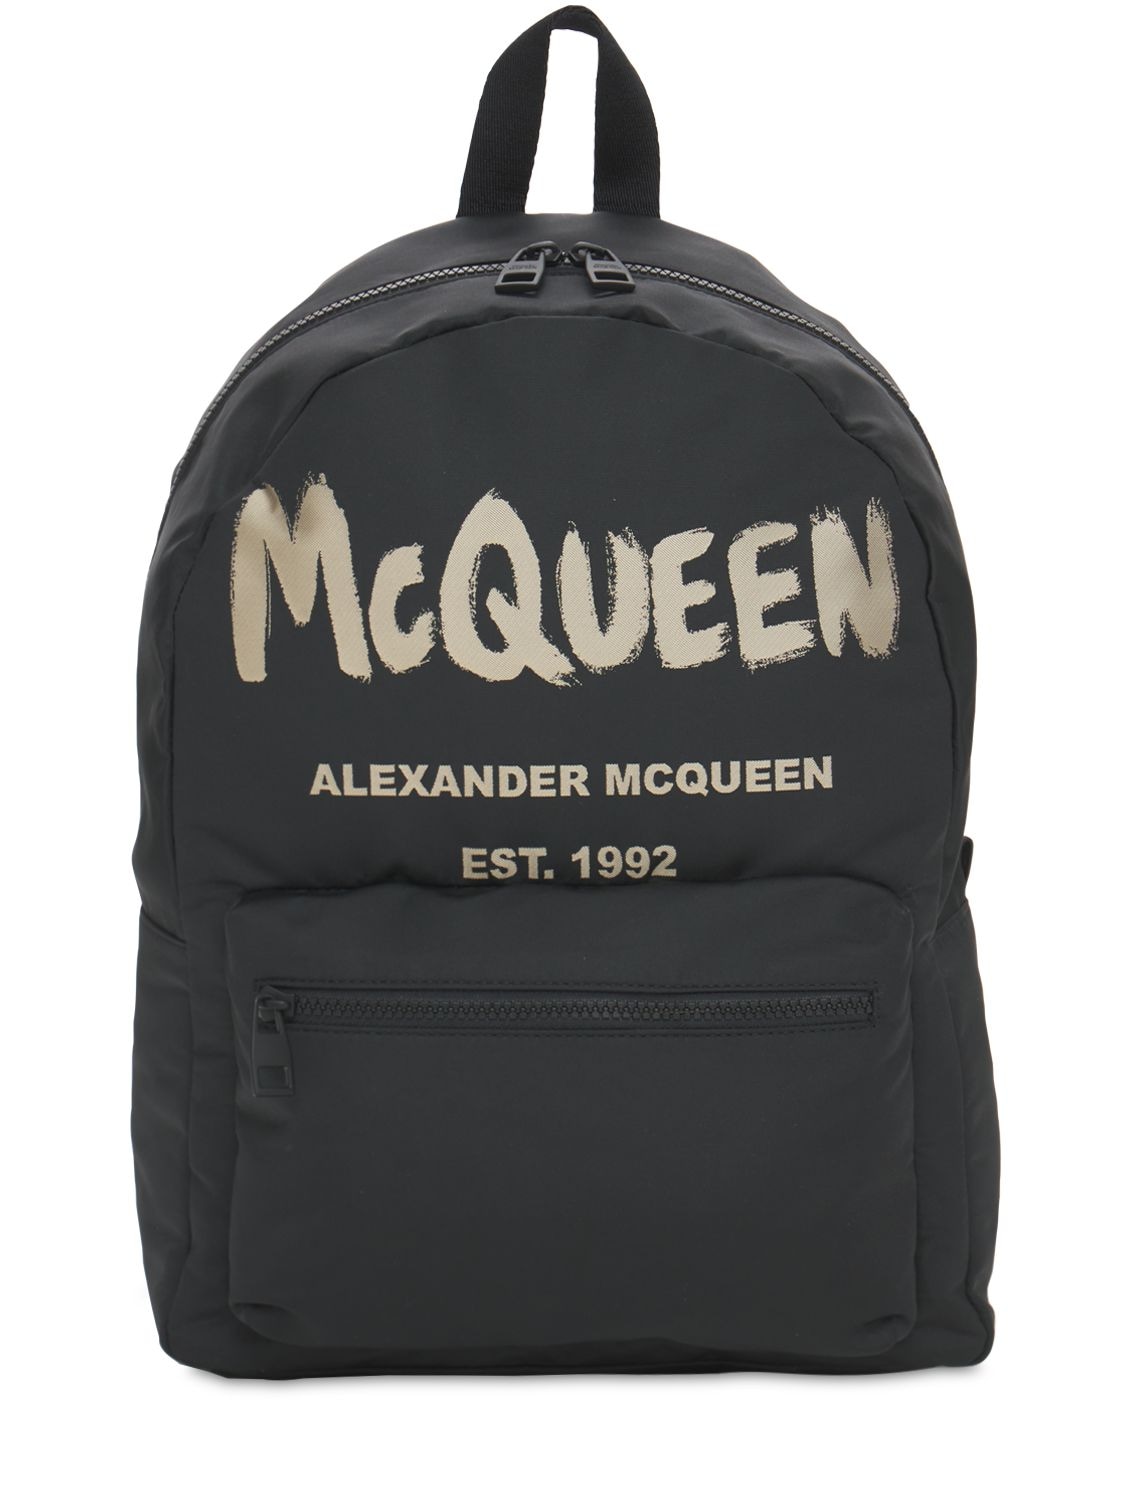 New Mcqueen Graffiti Nylon Backpack